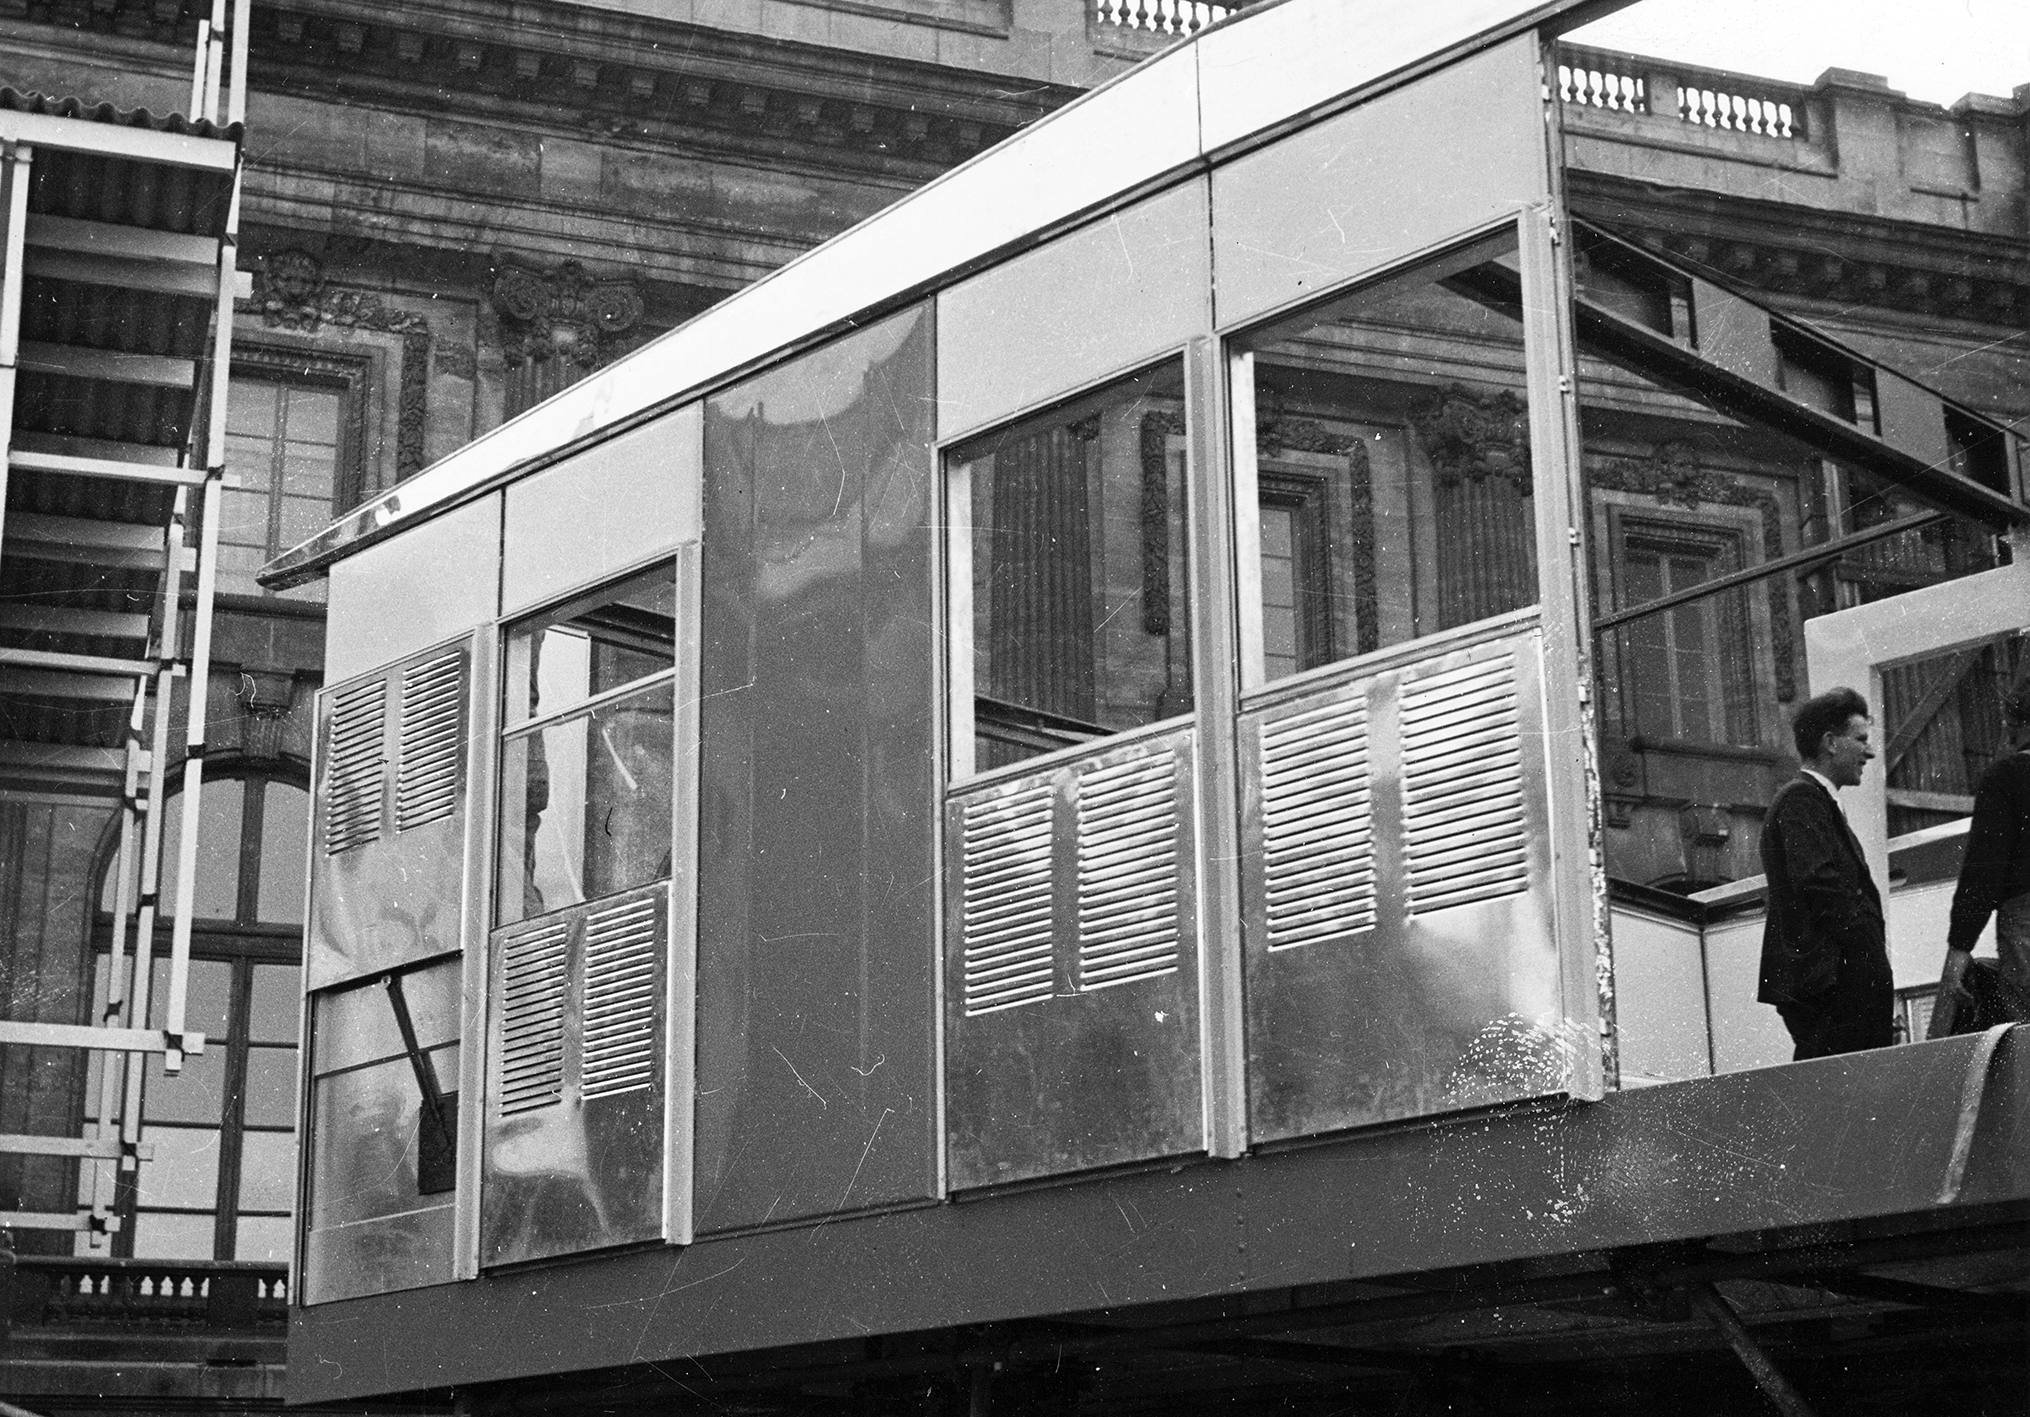 Maison démontable Métropole. Montage d’un pavillon 8x8 à l’Exposition de l’habitation, Salon des arts ménagers, Grand Palais, Paris, février 1950.